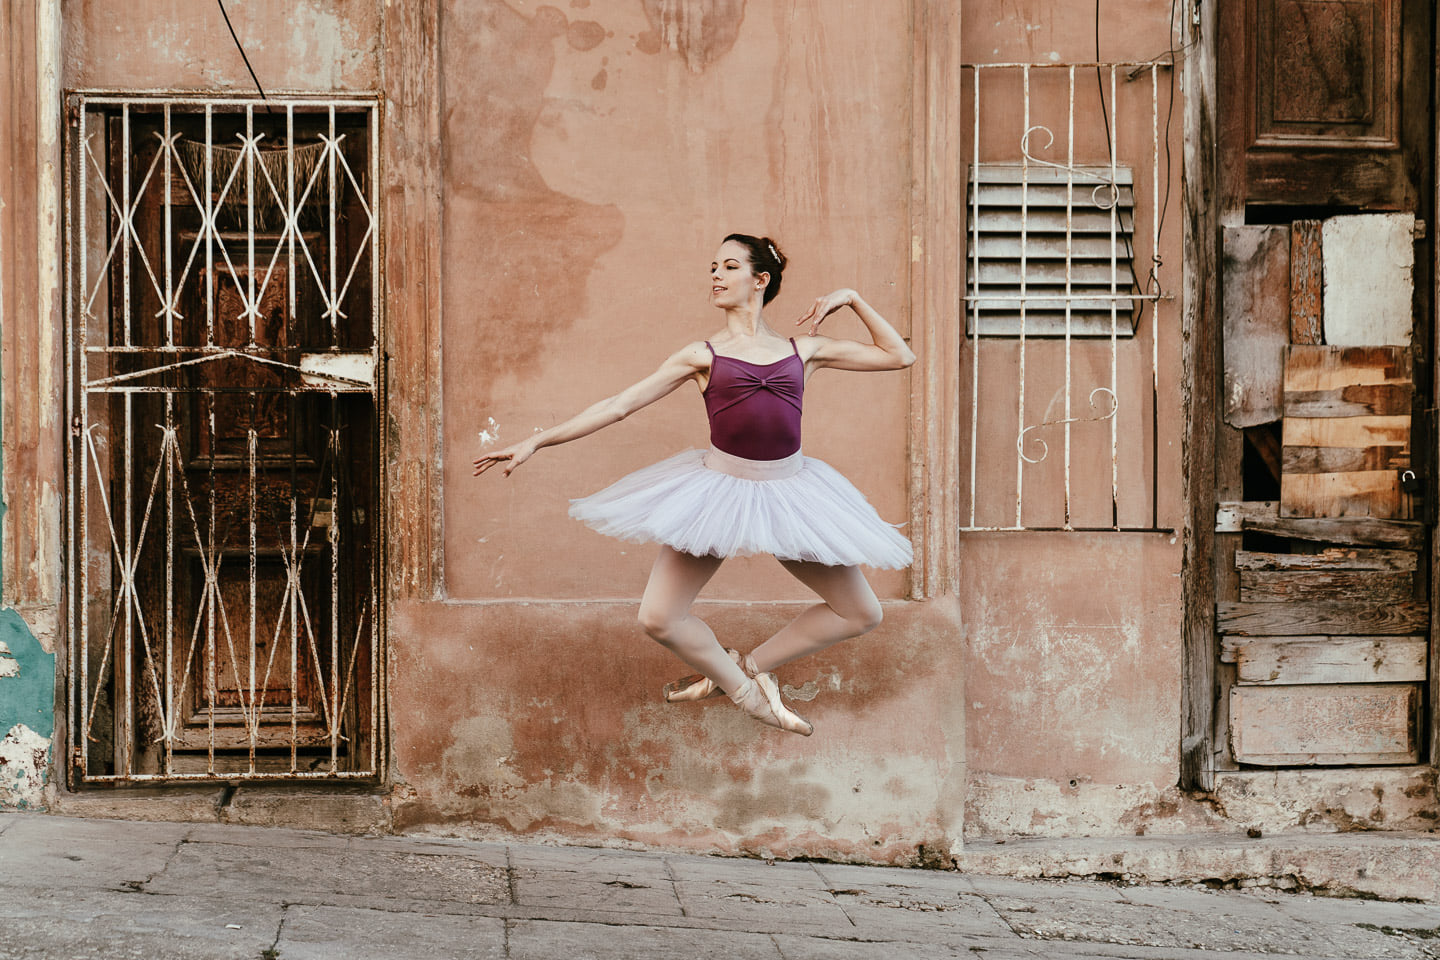 Eine professionelle Balletttänzerin springt in die Luft und verzaubert eine ganze Straße mit ihren eleganten und filigranen Bewegungen.